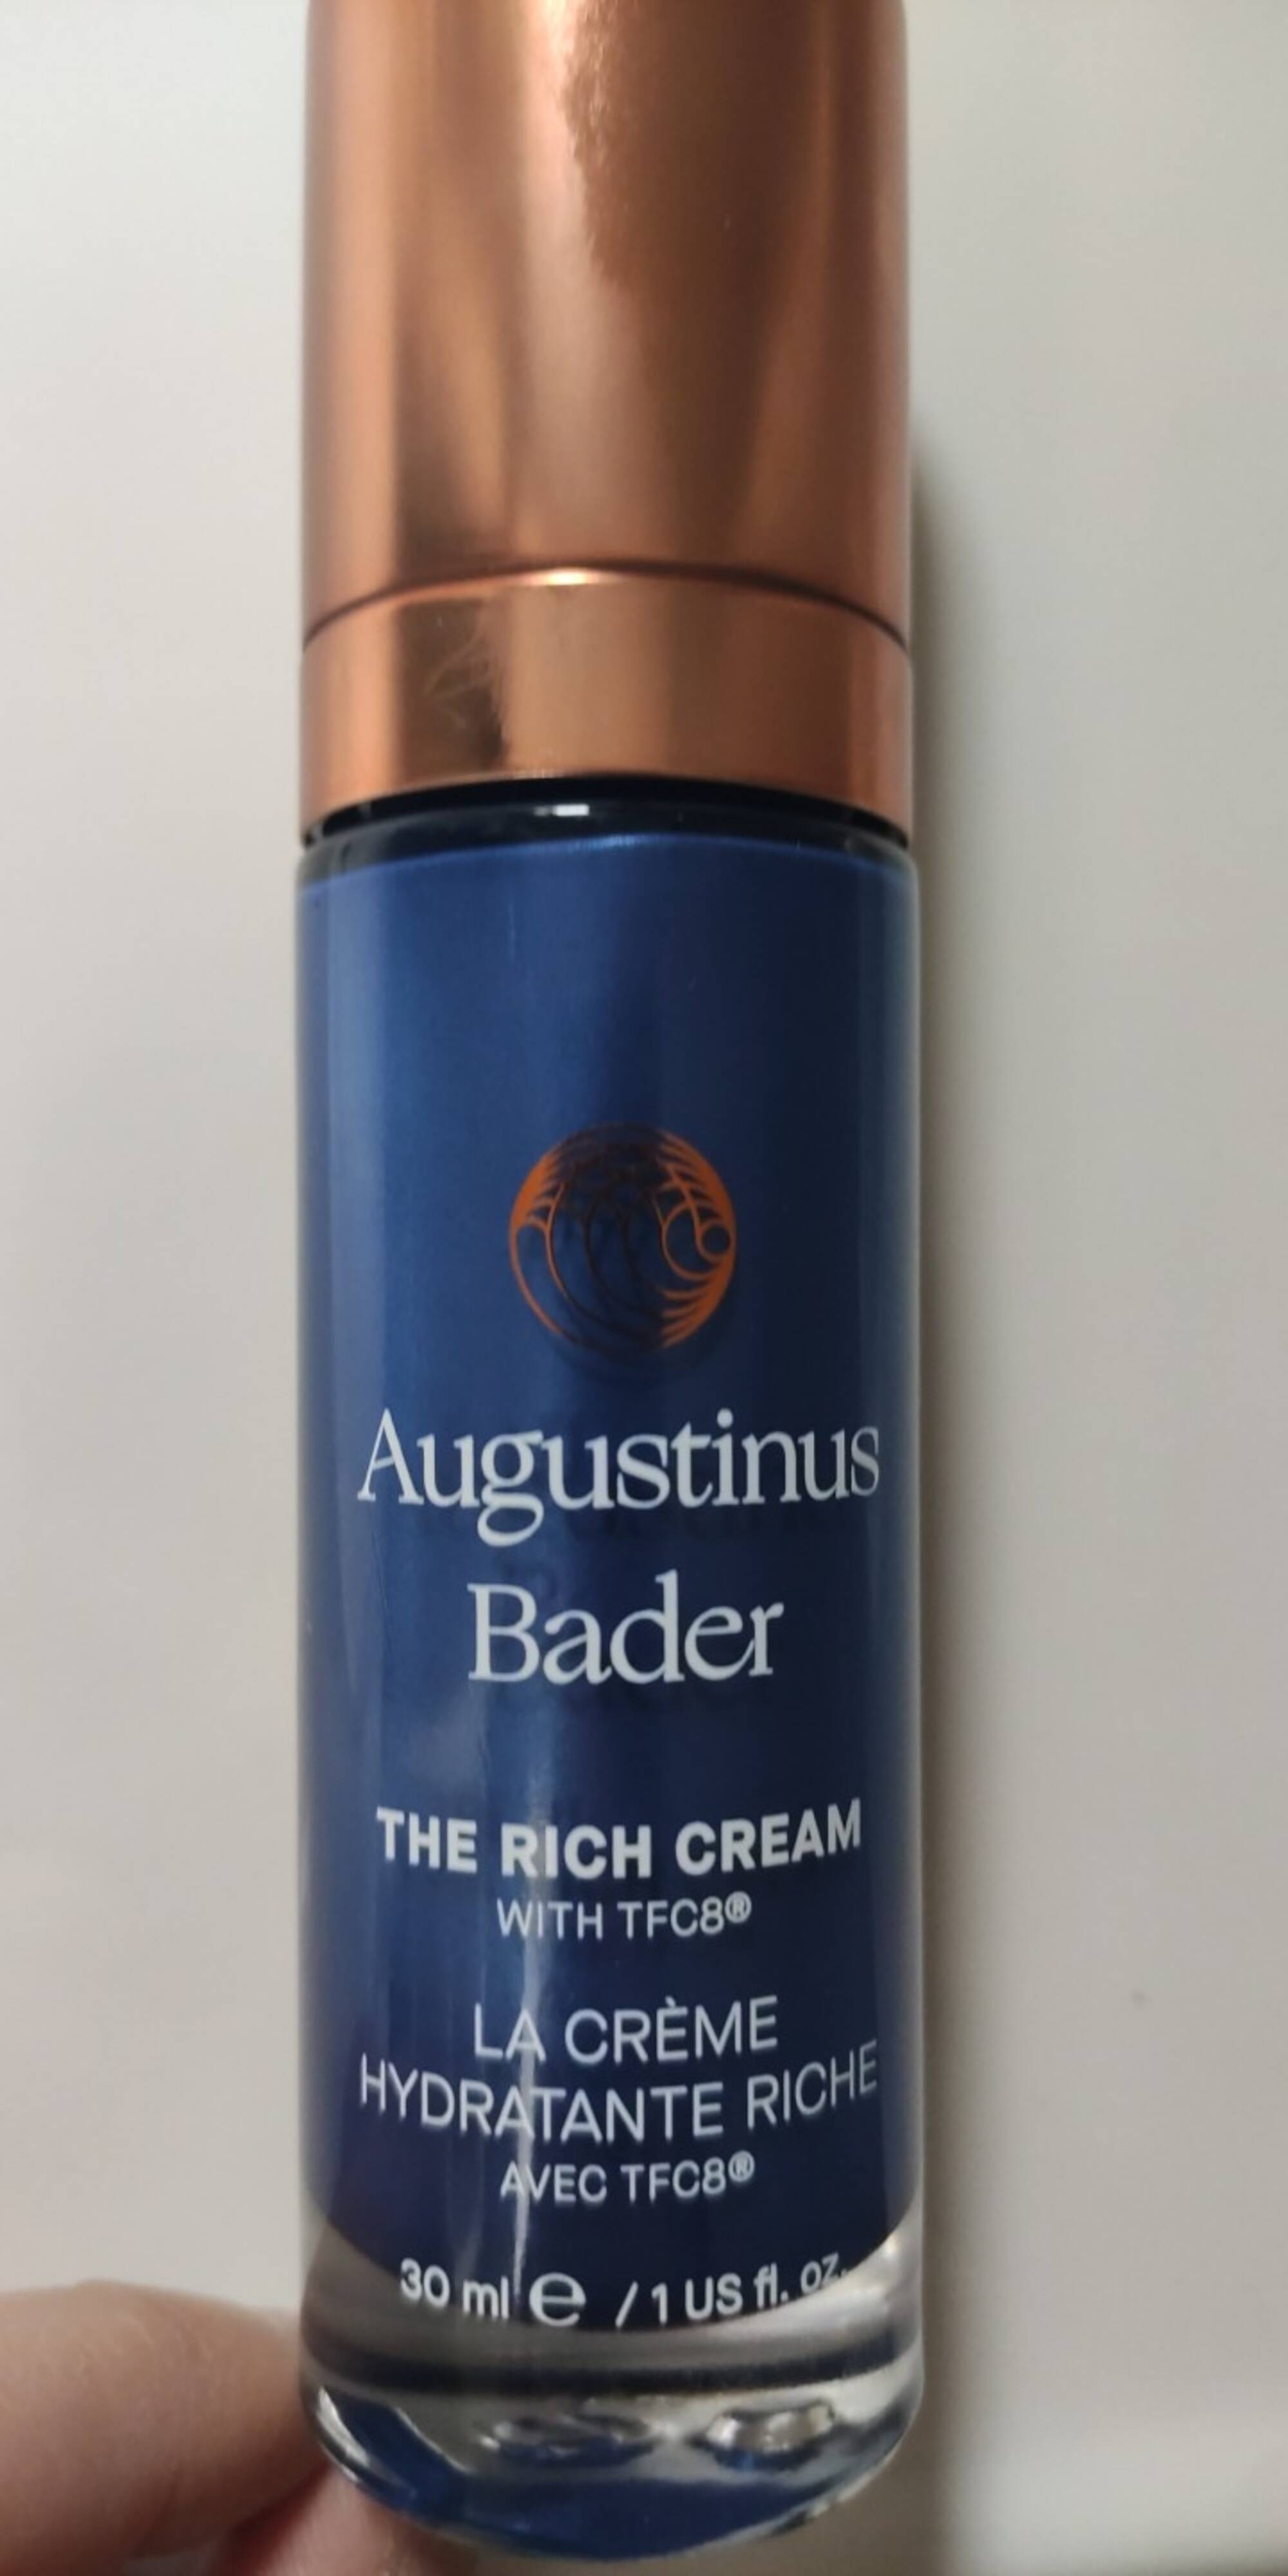 AUGUSTINUS BADER - La crème hydratante riche avec TFC8